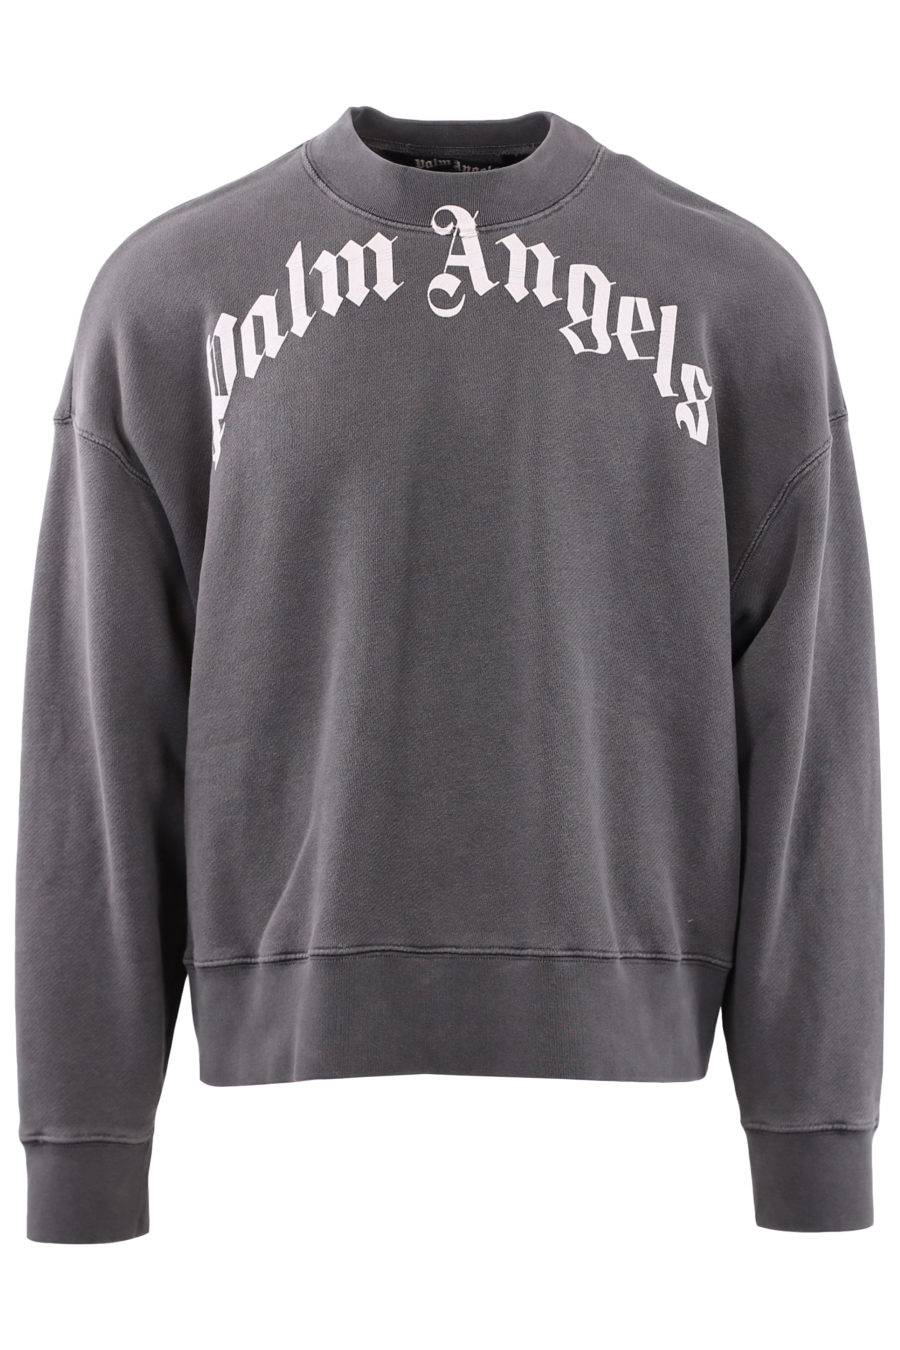 Graues Sweatshirt mit Markenlogo - IMG 7177